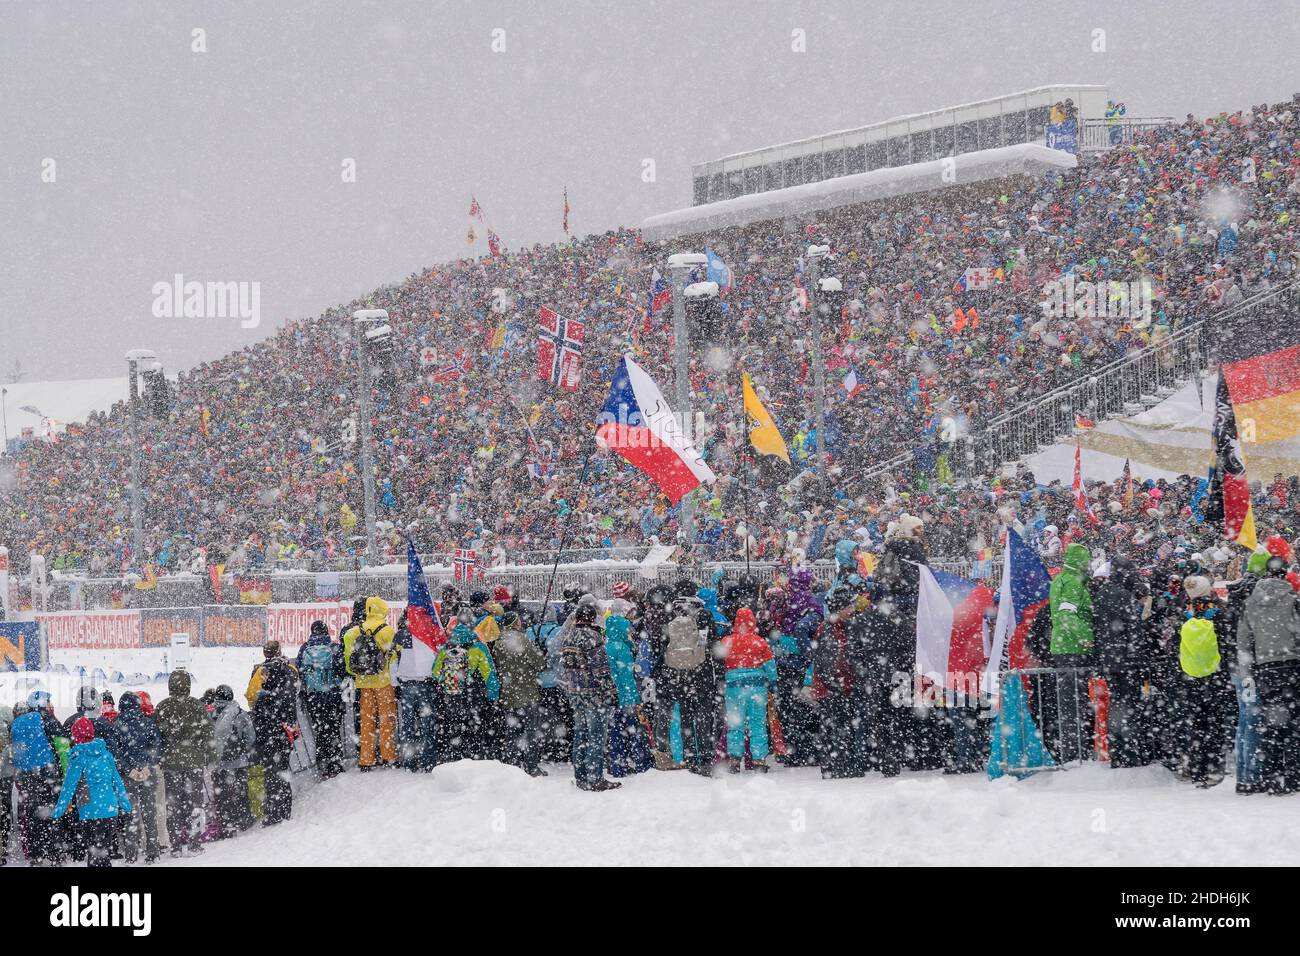 Zuschauer, Biathlon, Chiemgauarena, Zuschauer Stockfoto